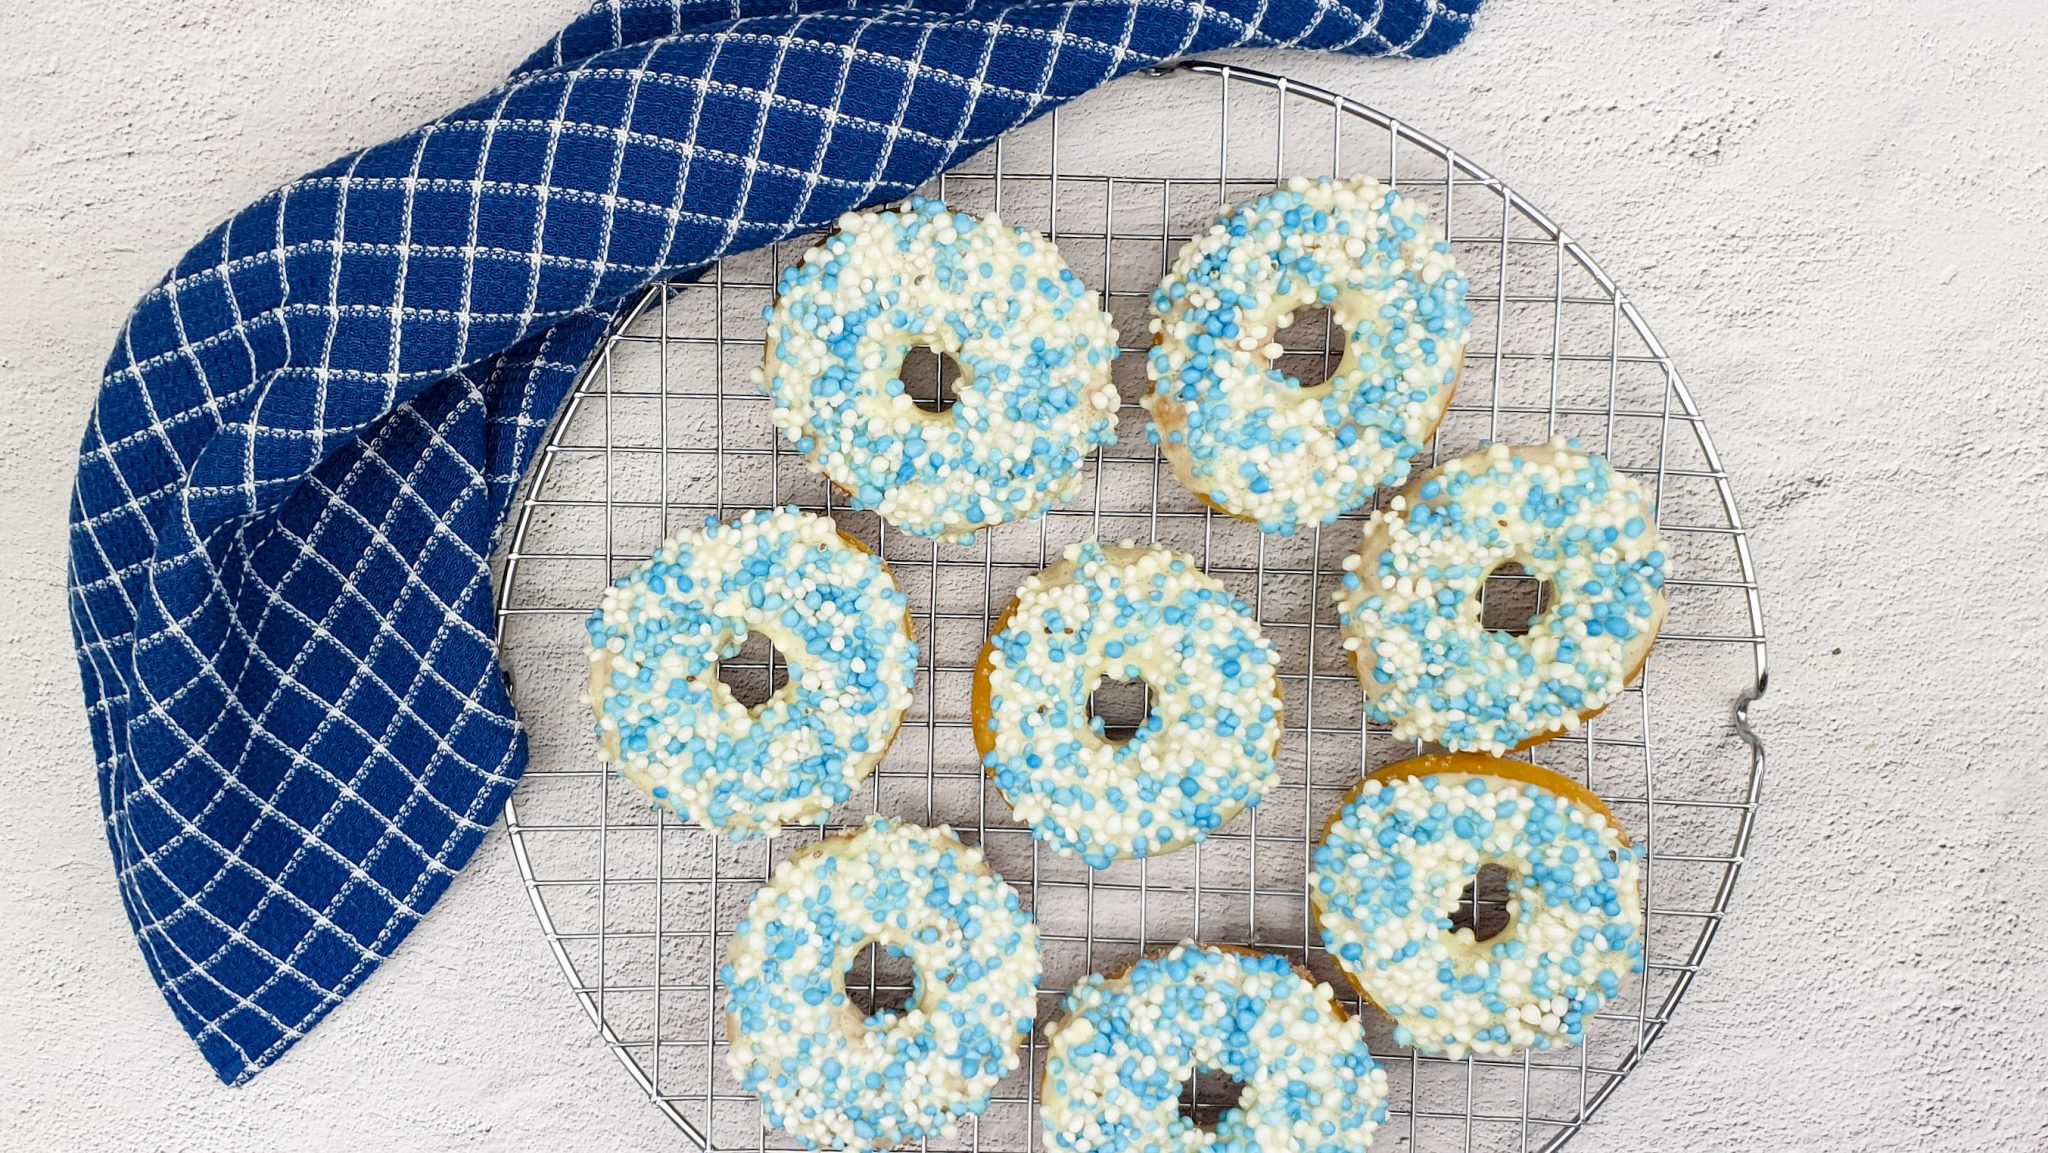 Zelfgemaakte donuts met blauwe muisjes